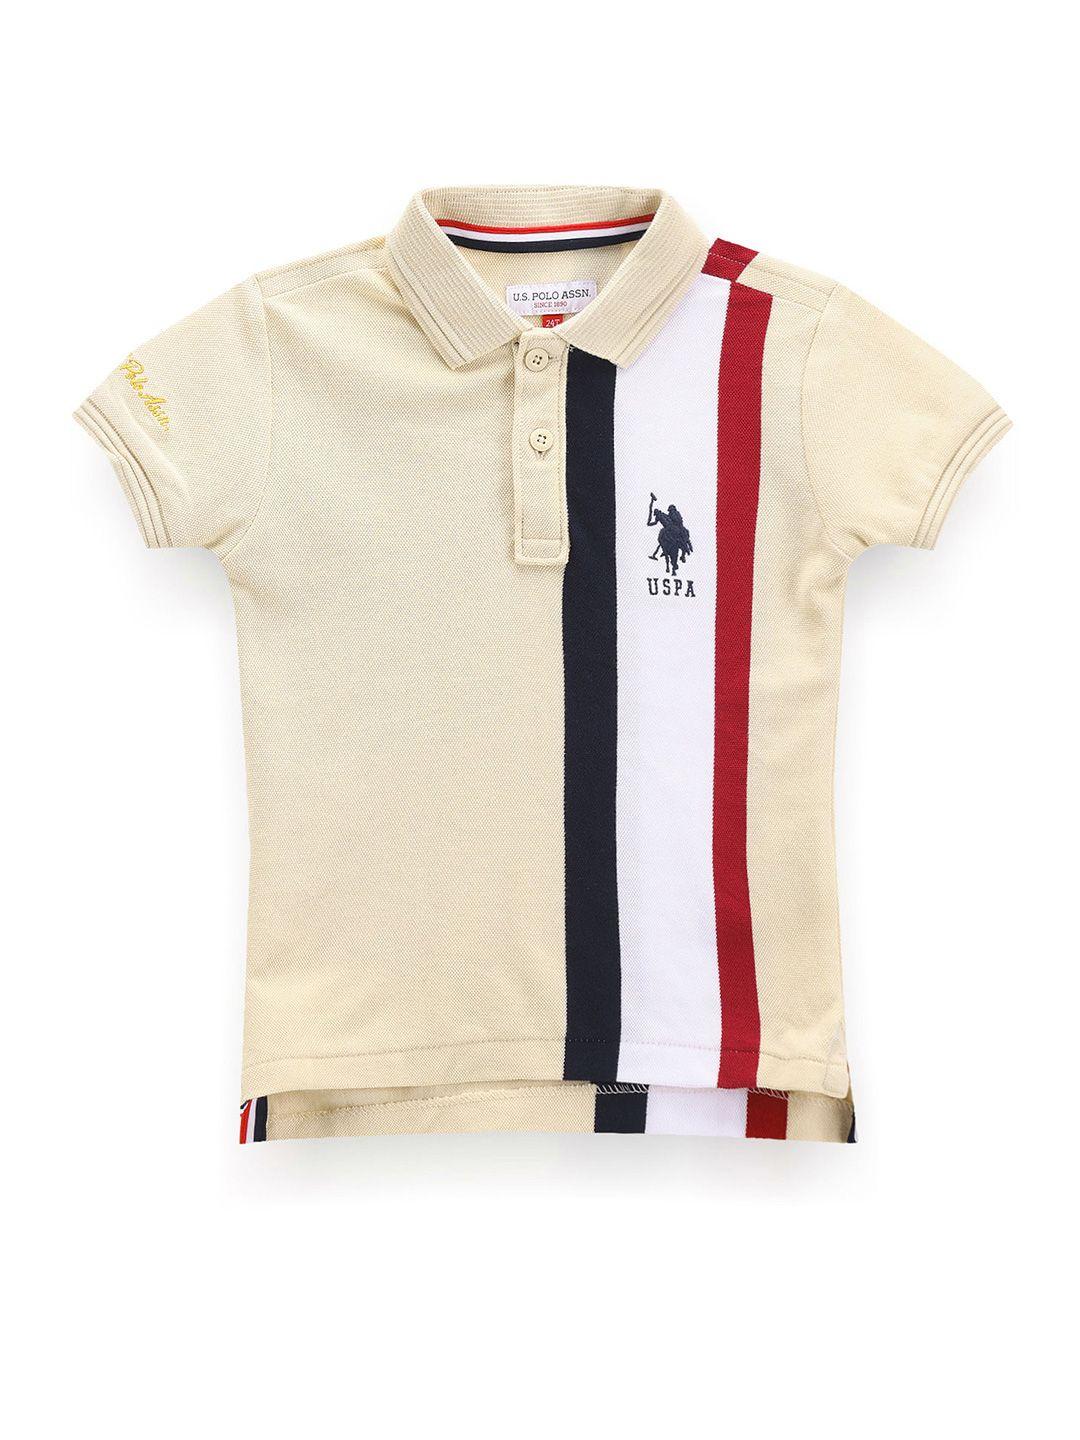 u.s. polo assn. kids boys striped polo collar t-shirt